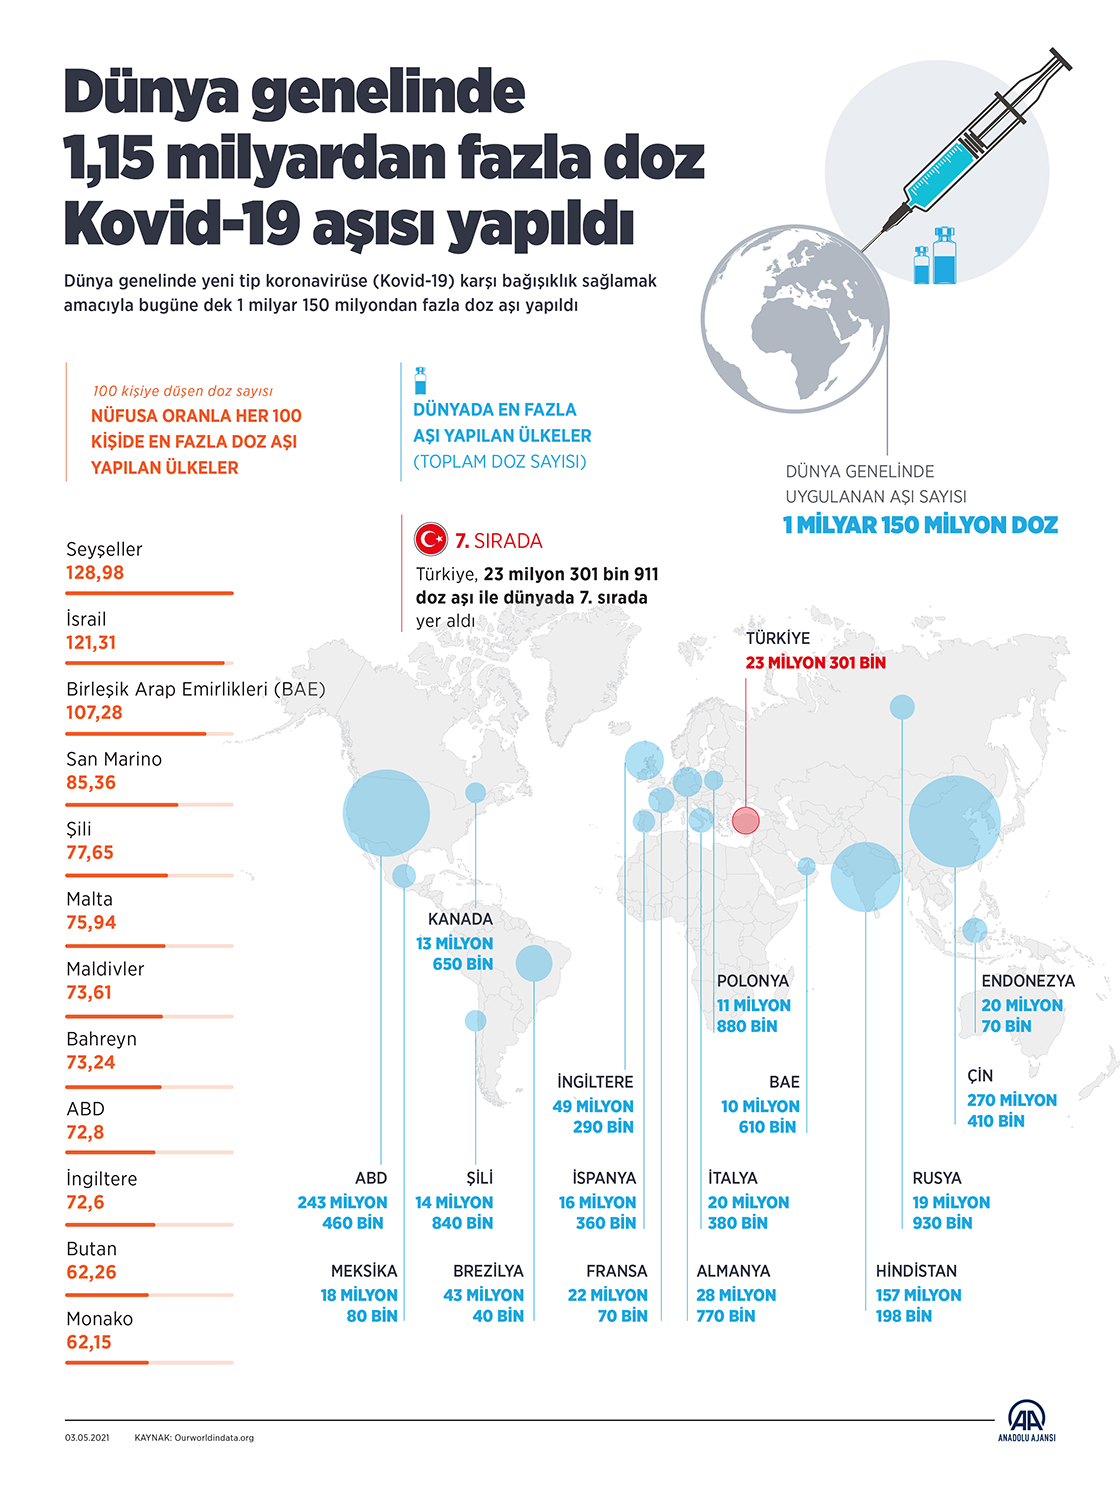 Dünya genelinde 1,15 milyardan fazla doz Kovid-19 aşısı yapıldı